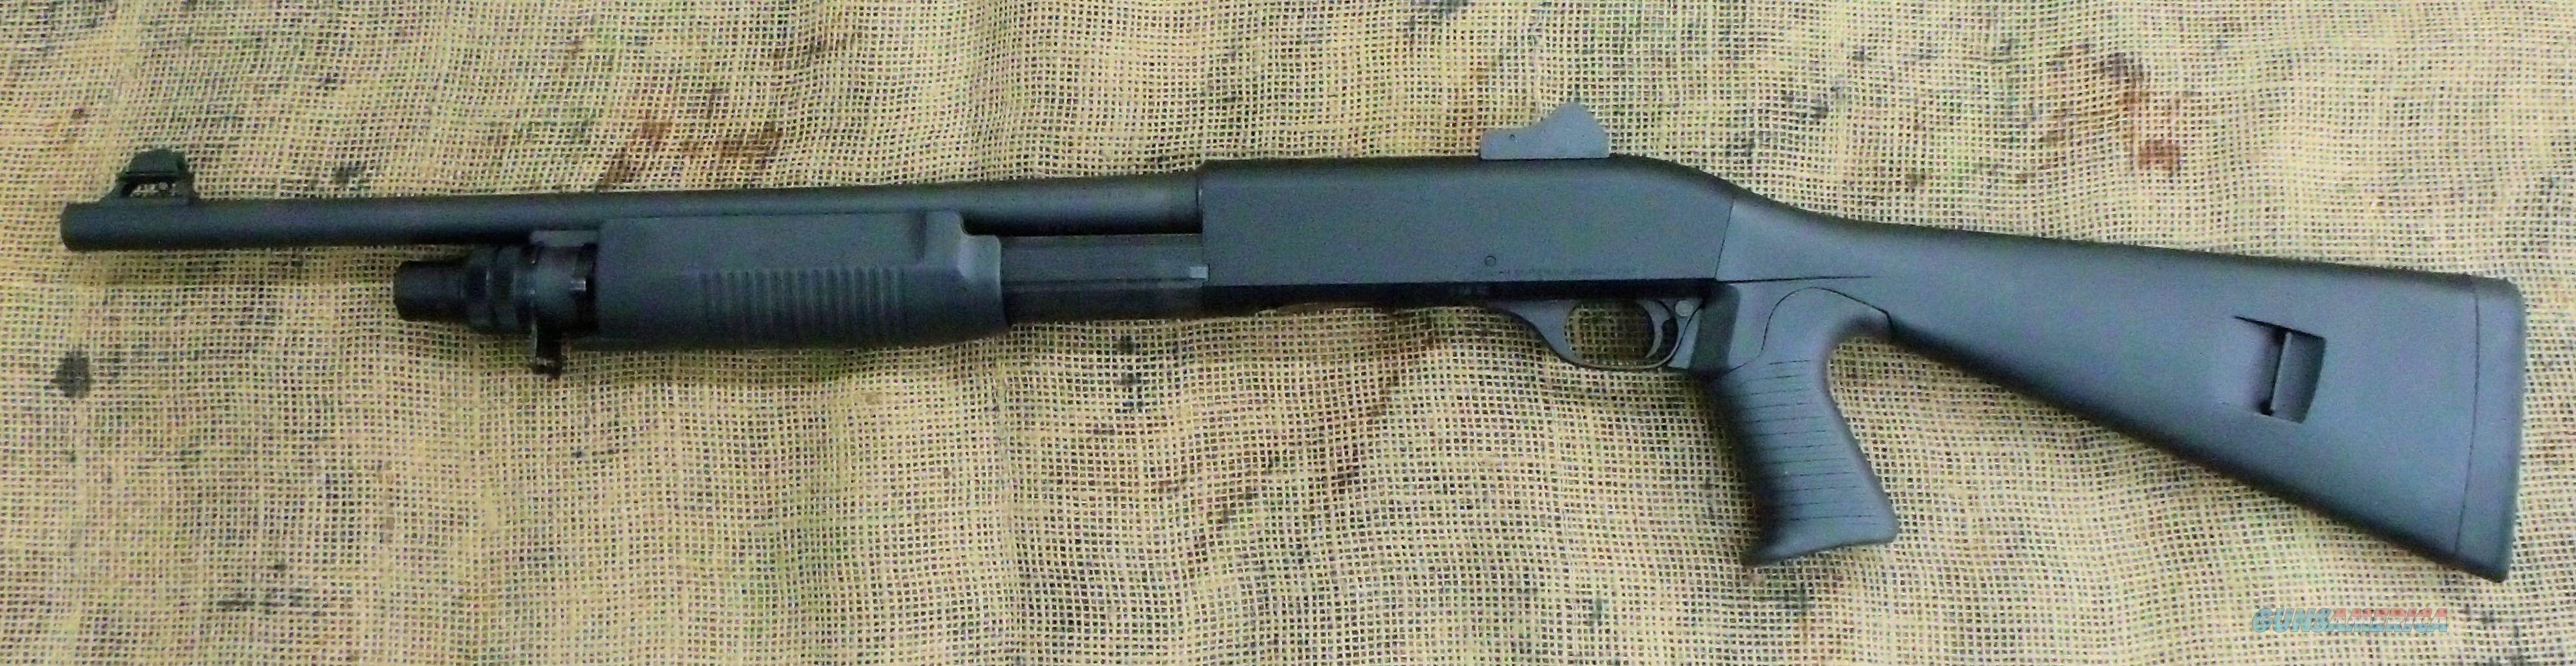 Benelli m3 shotgun flashlight